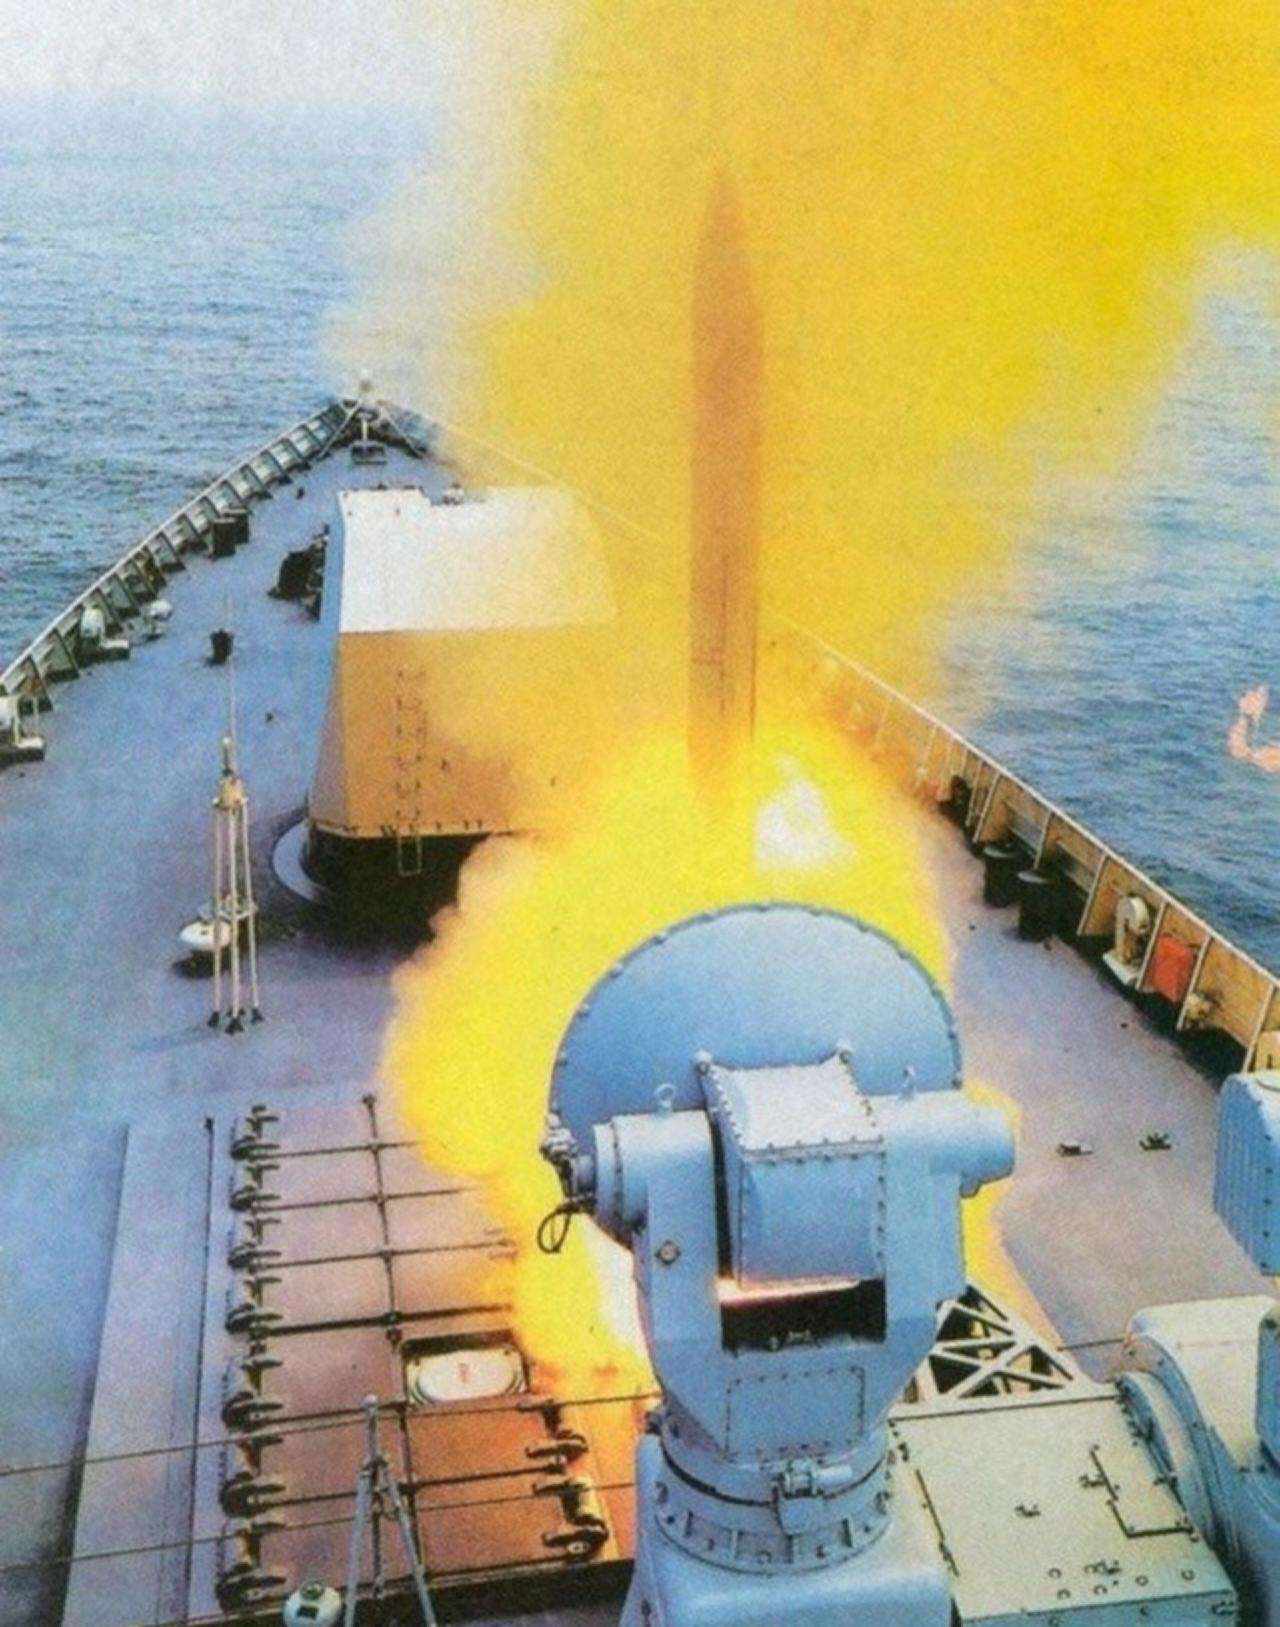 中国高调曝光潜射巡航导弹同款曾击沉印度潜艇